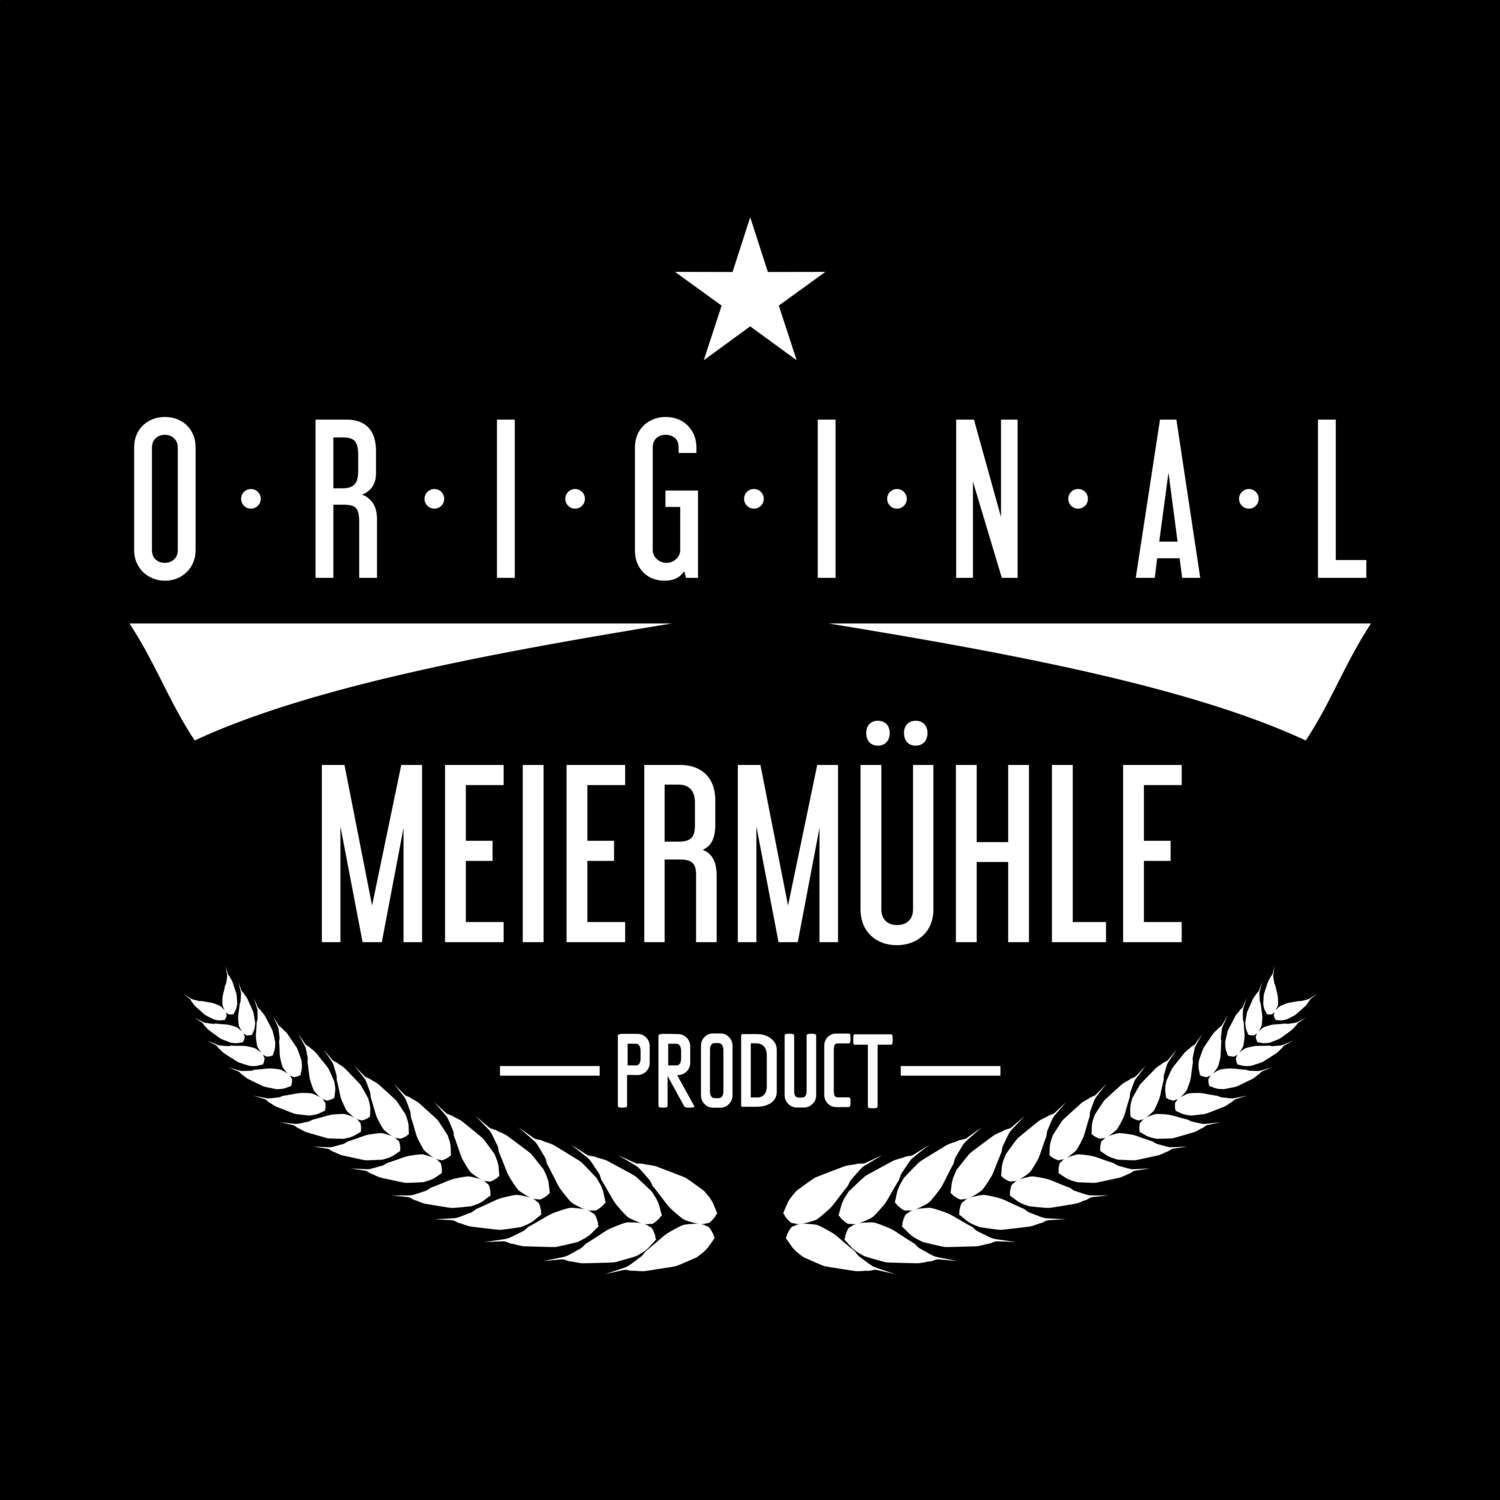 Meiermühle T-Shirt »Original Product«